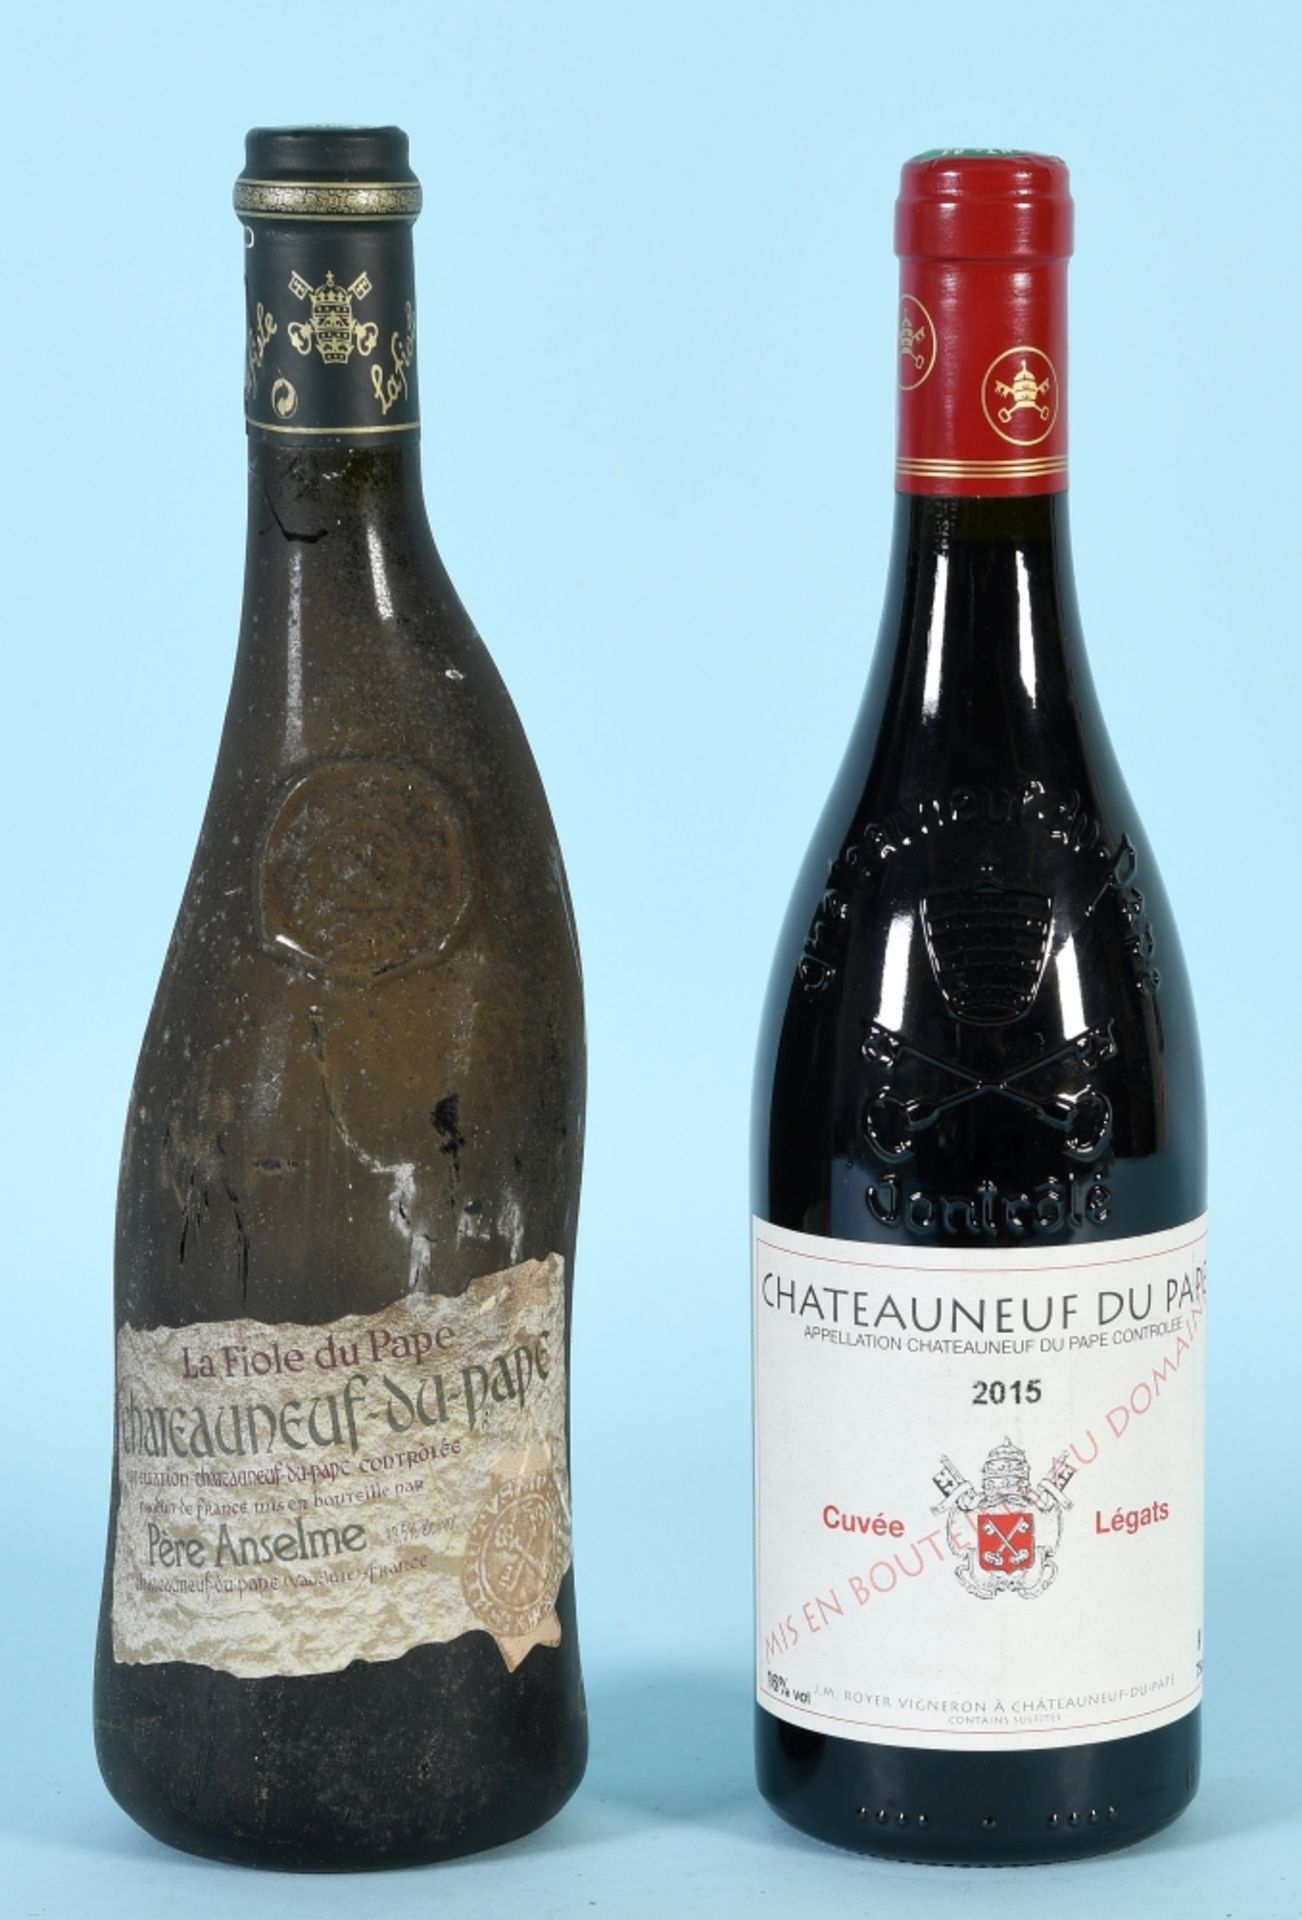 Rotwein "Chateauneuf du pape", 2 Flaschen